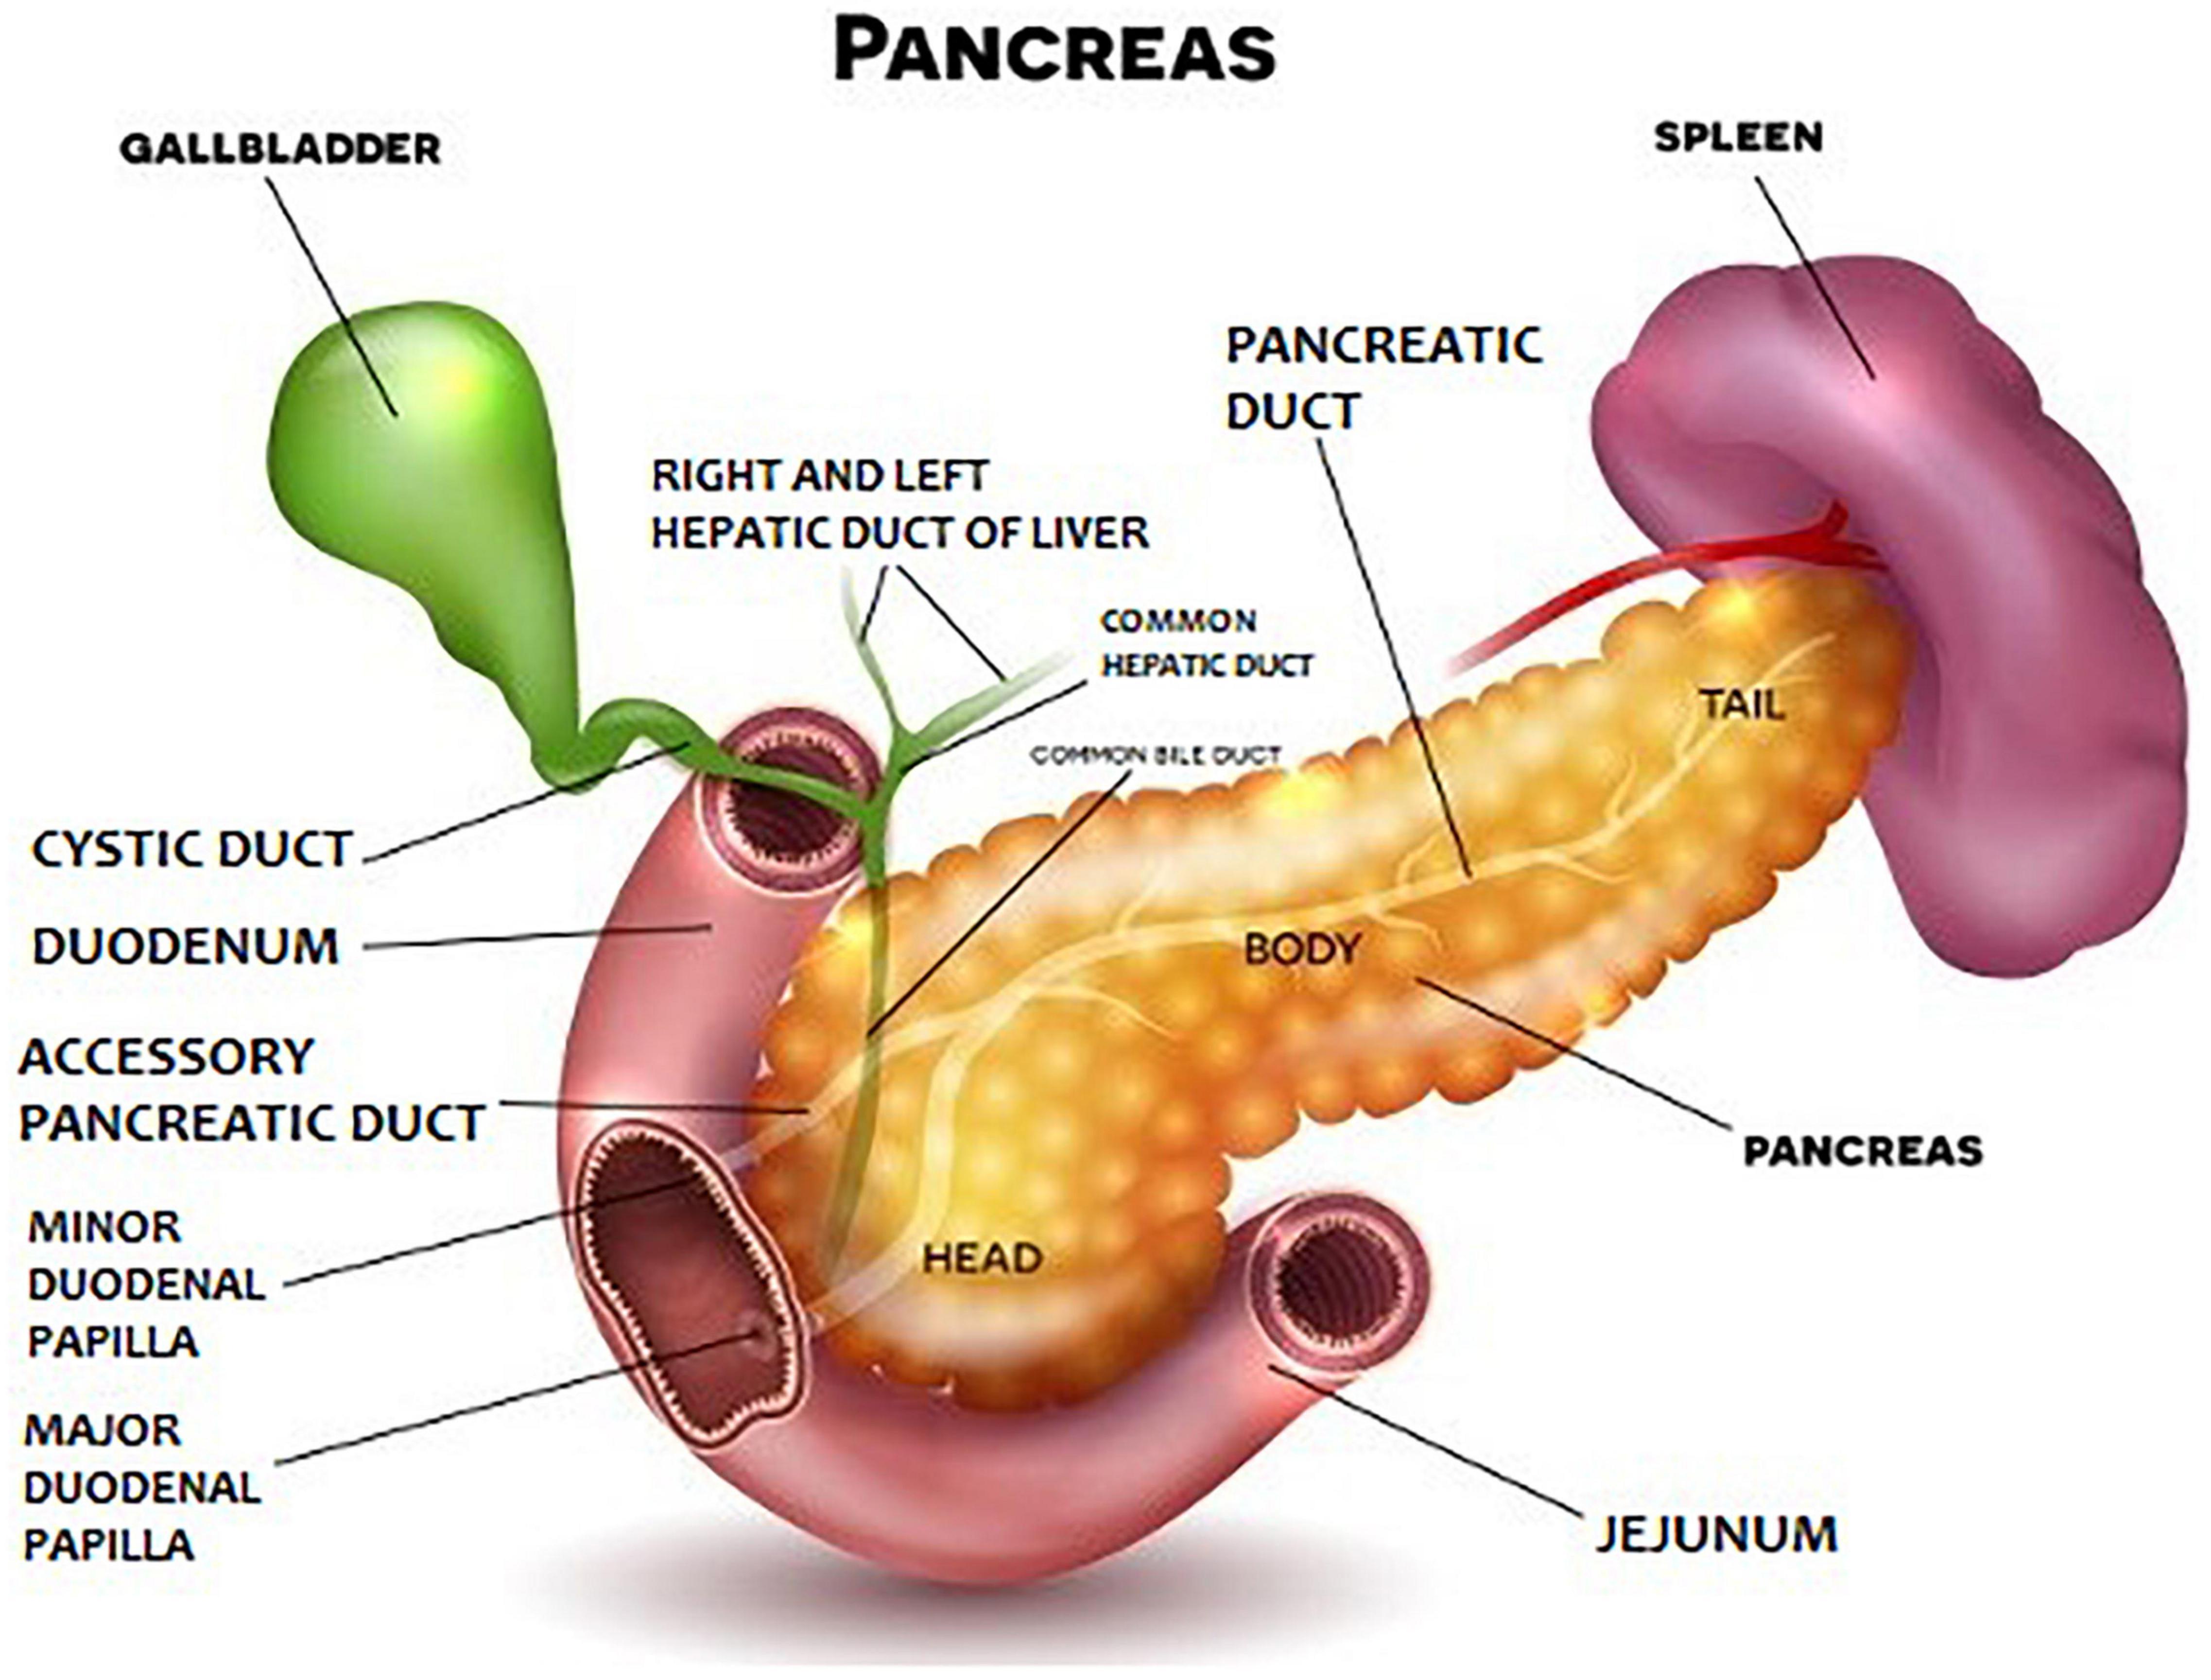 Pancreatic function